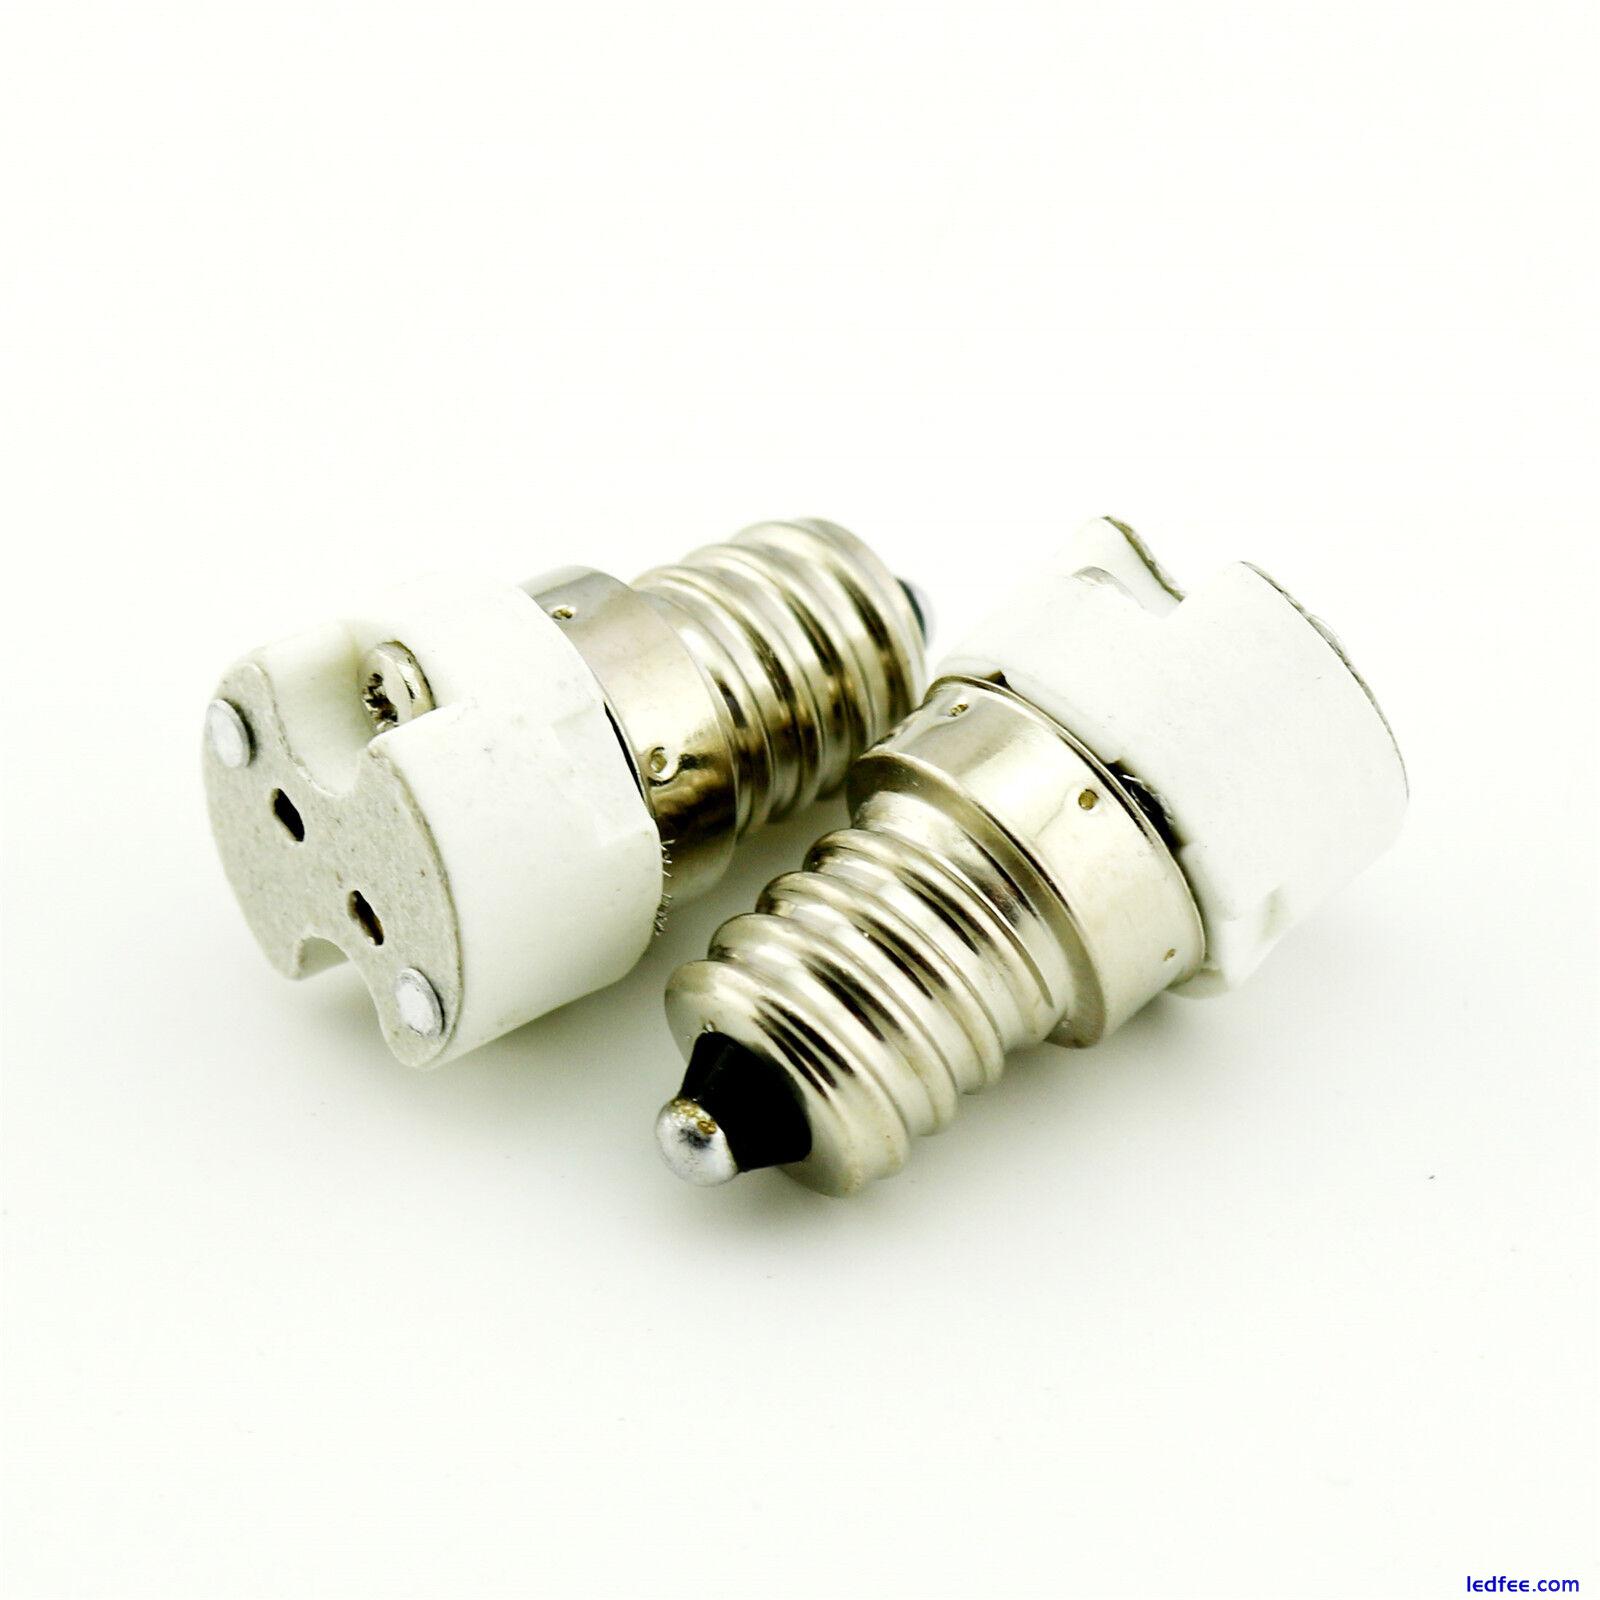 1pc E12 to MR16 G4,G5.3 Socket Led Lamp Light Bulb Holder Base Converter Adapter 4 